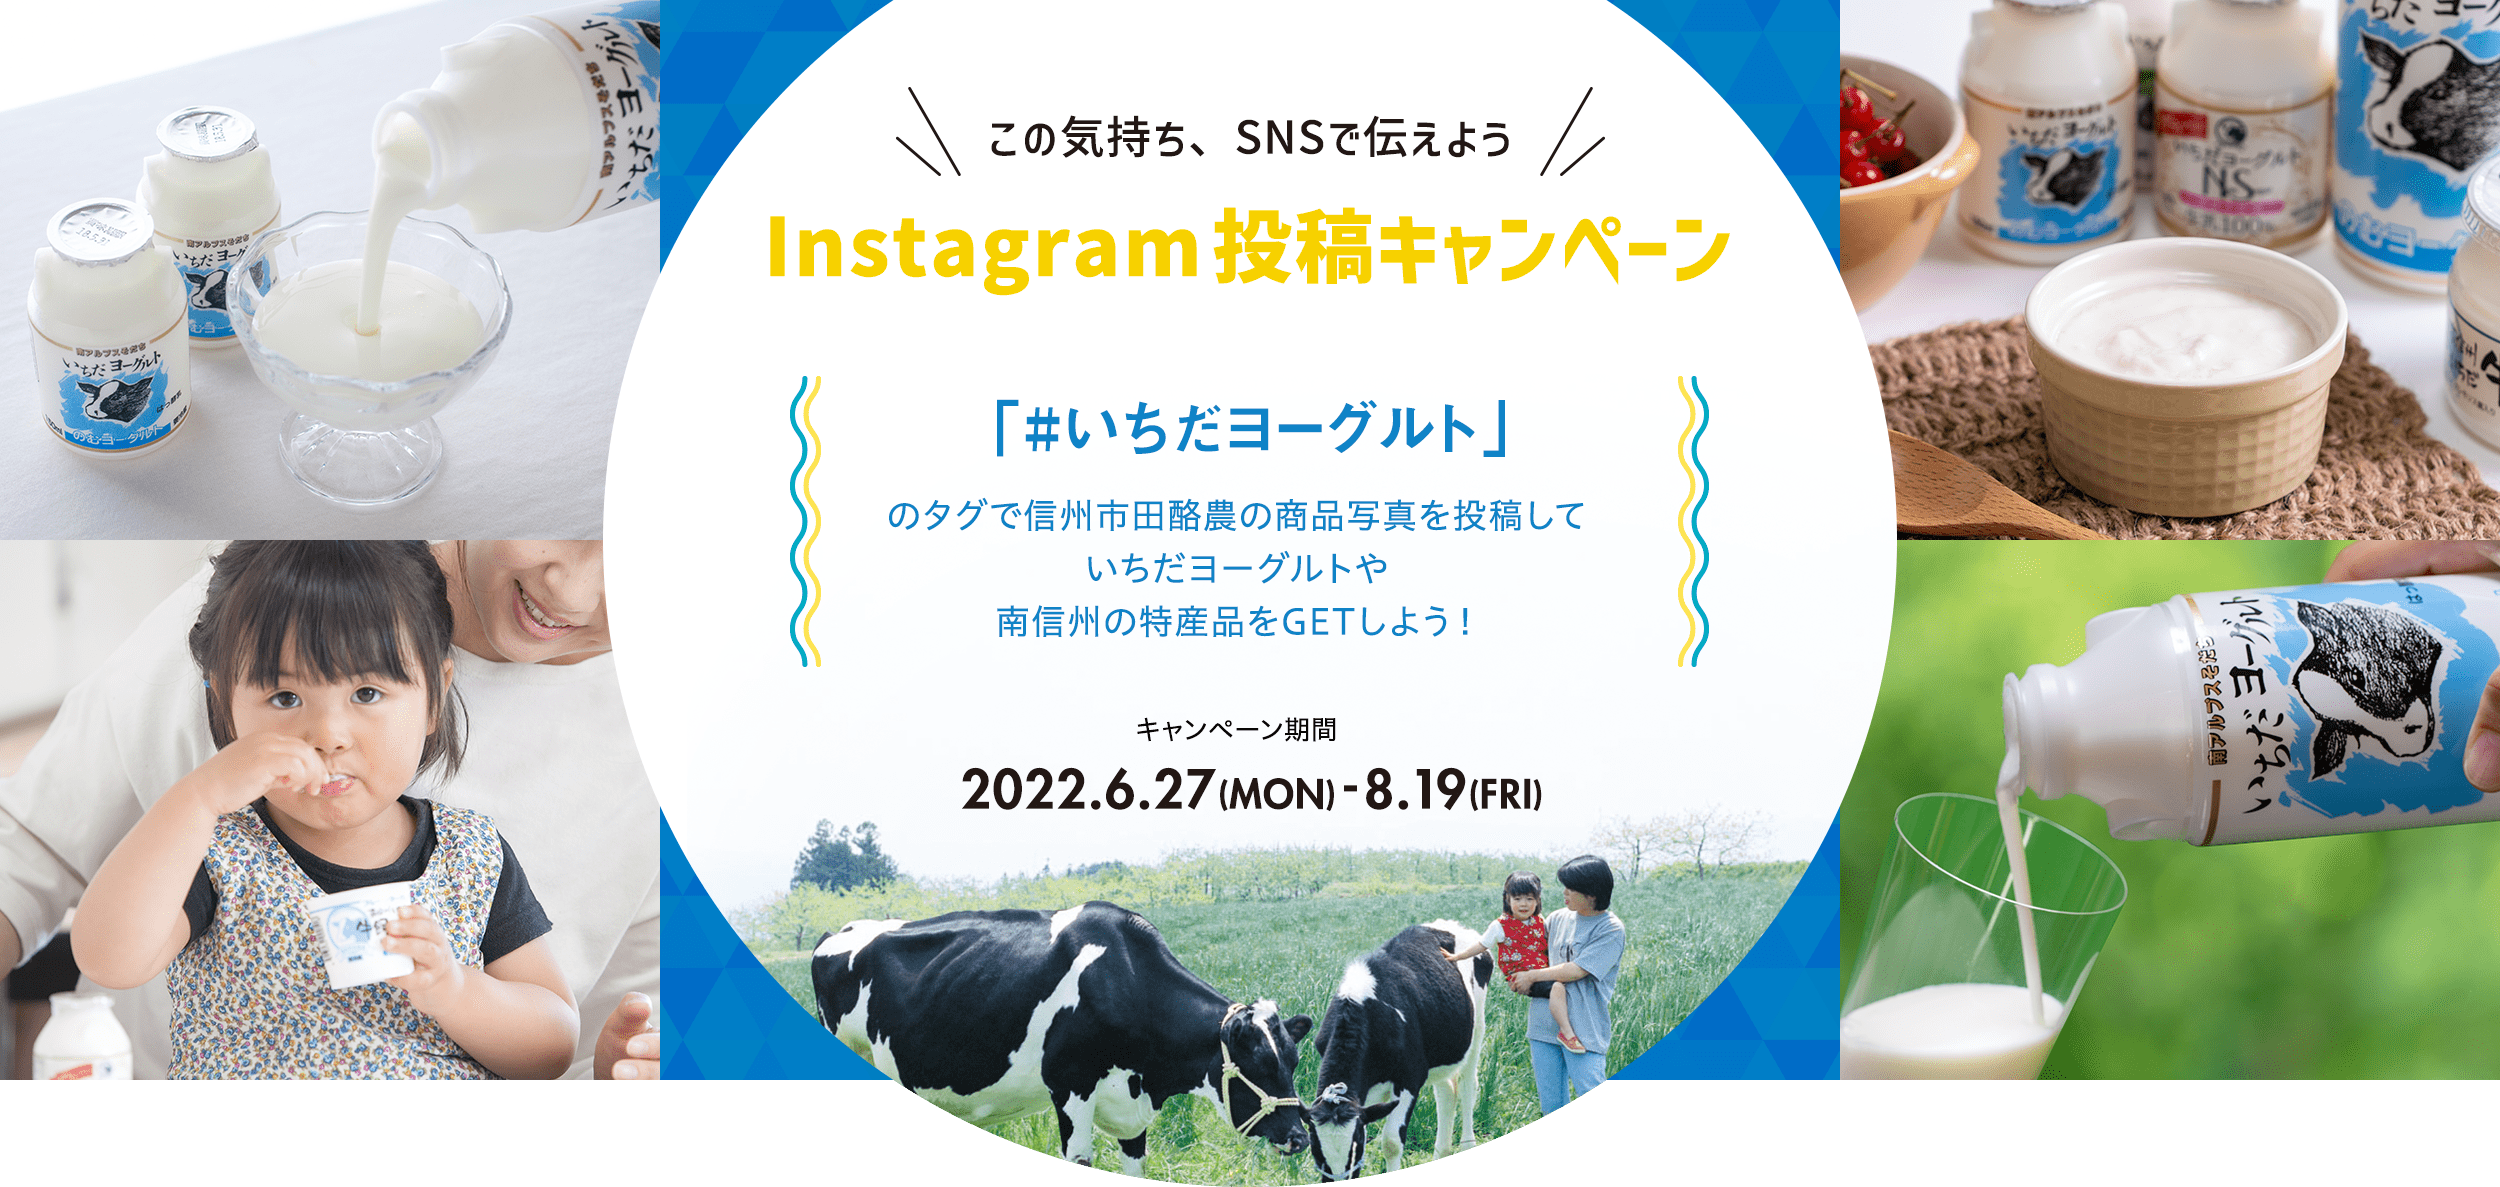 市田酪農 Instagram投稿キャンペーン